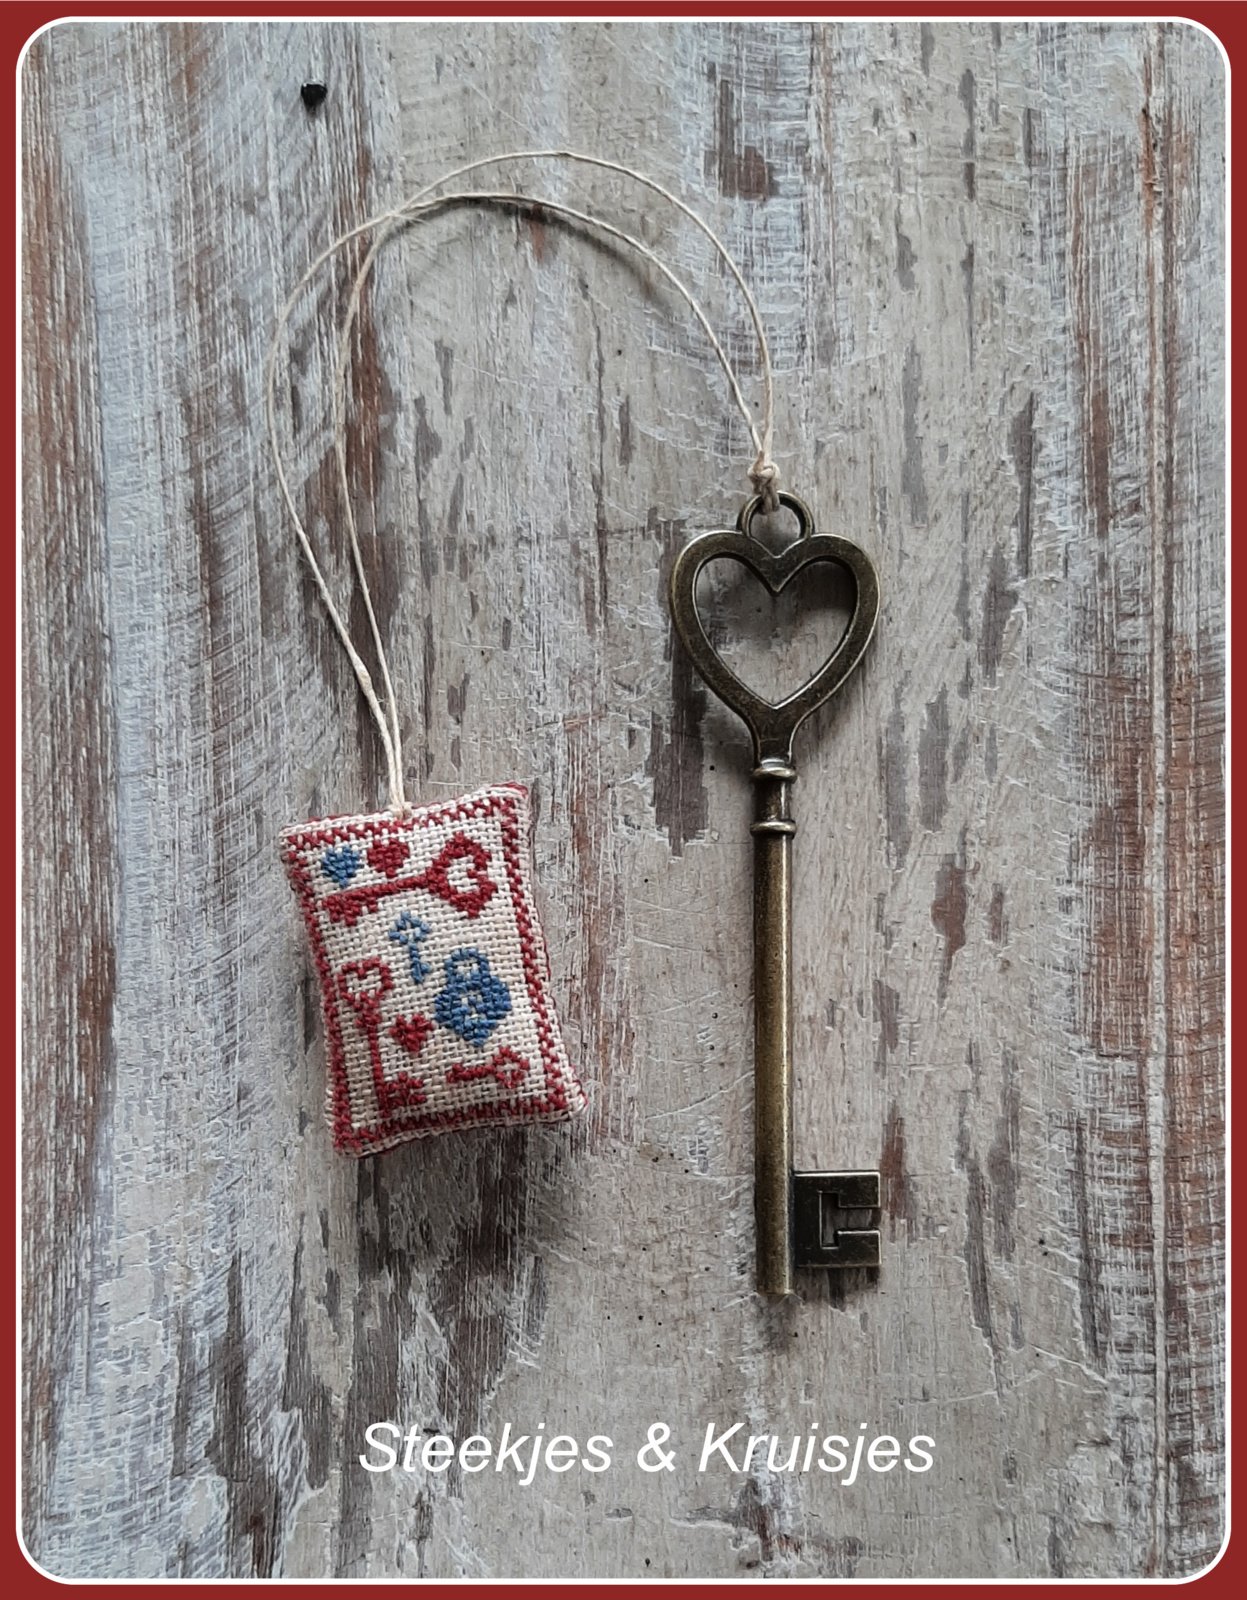 Key-up bronze large heart shaped